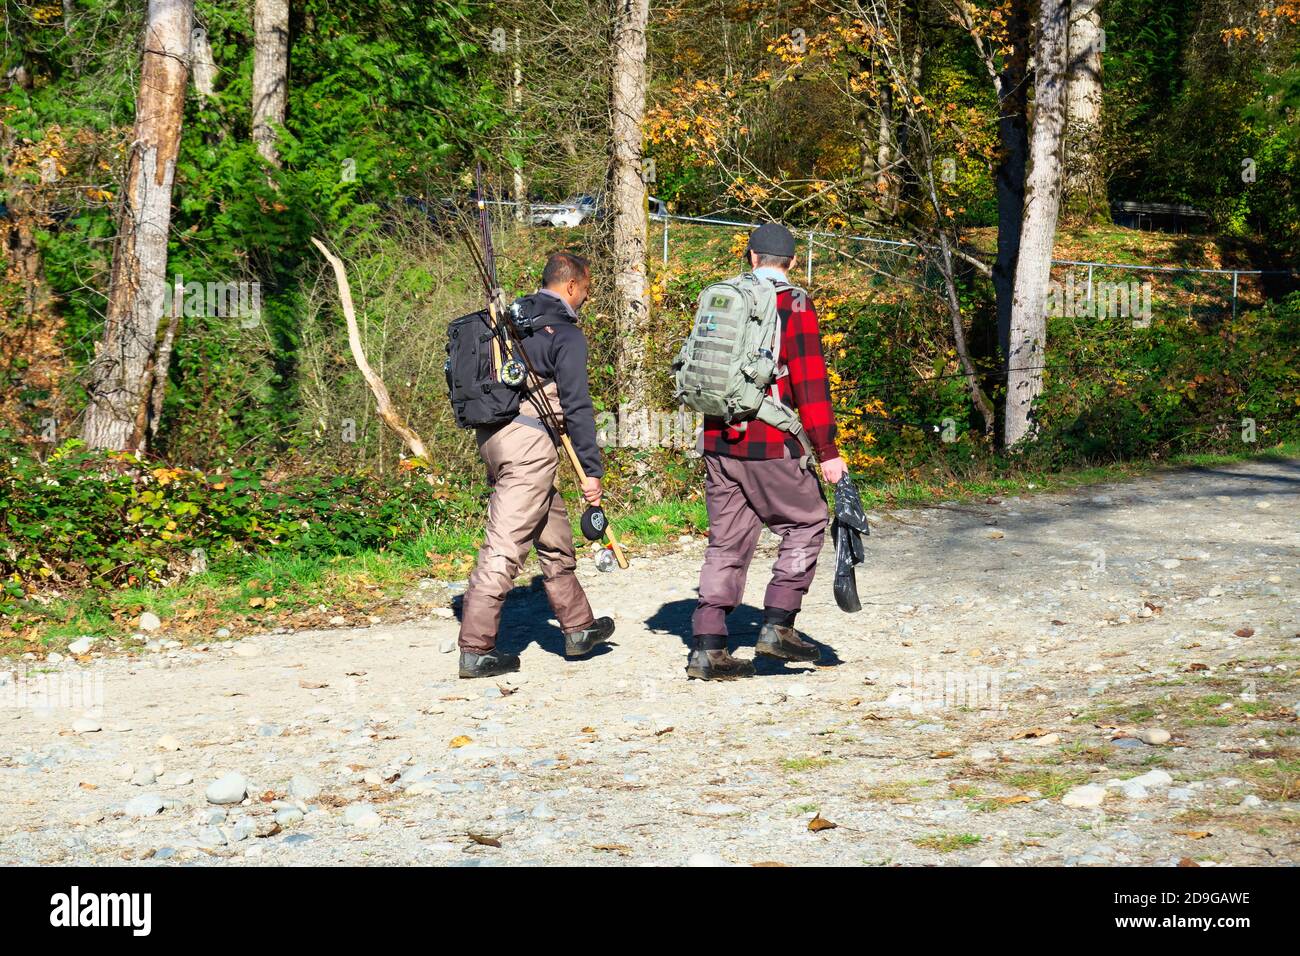 Zwei Fischer, die Hüftwader tragen und Angelruten tragen, gehen zurück zum Parkplatz. Mission, B. C., Kanada. Stock Foto. Stockfoto